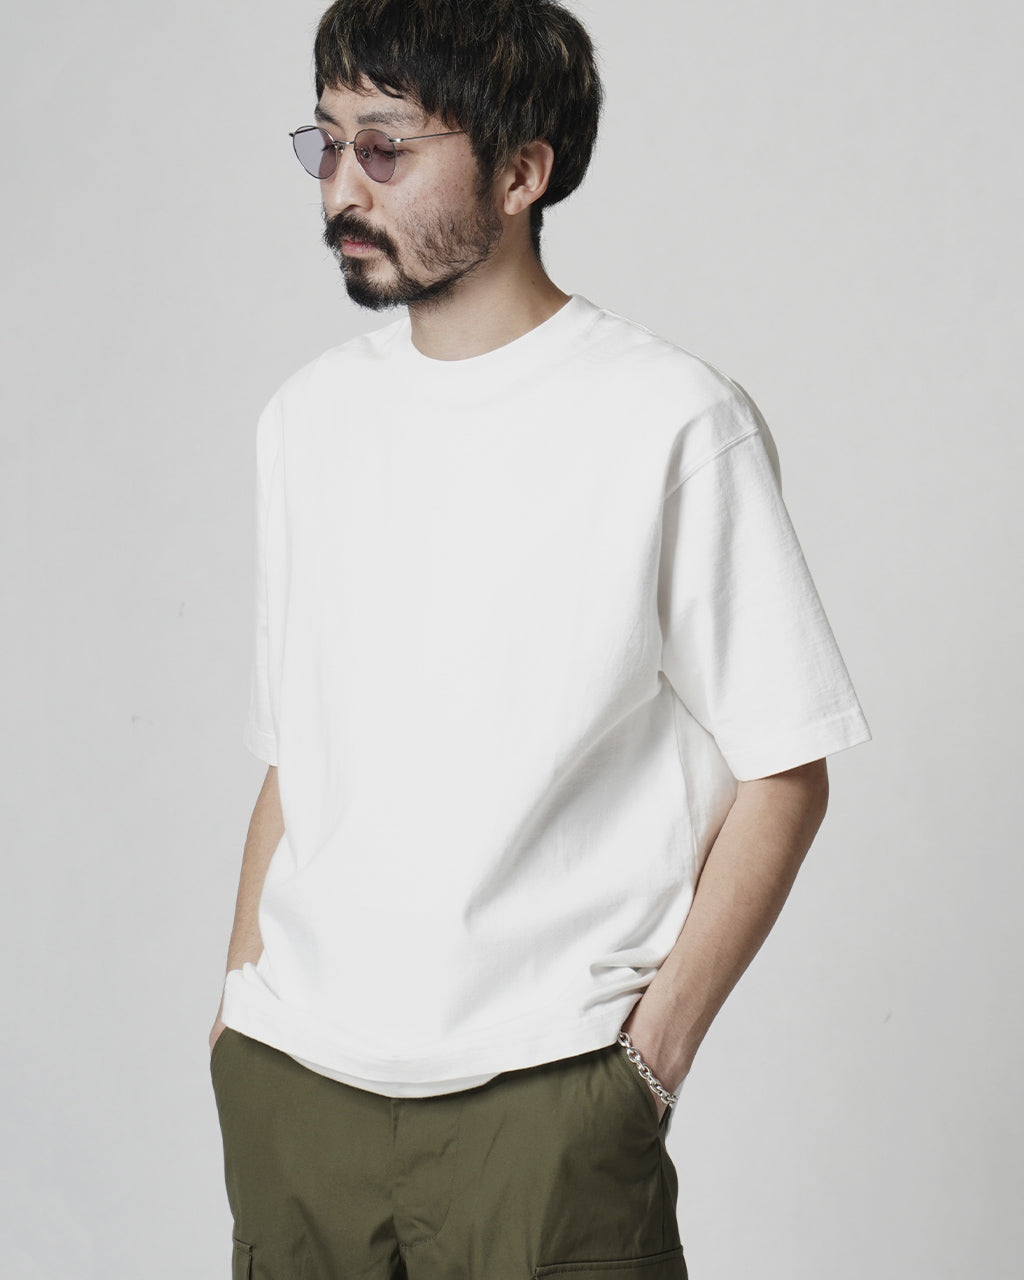 CIOTA シオタ ショートスリーブ Tシャツ Short Sleeve T-shirt CSLM-141 【送料無料】正規取扱店